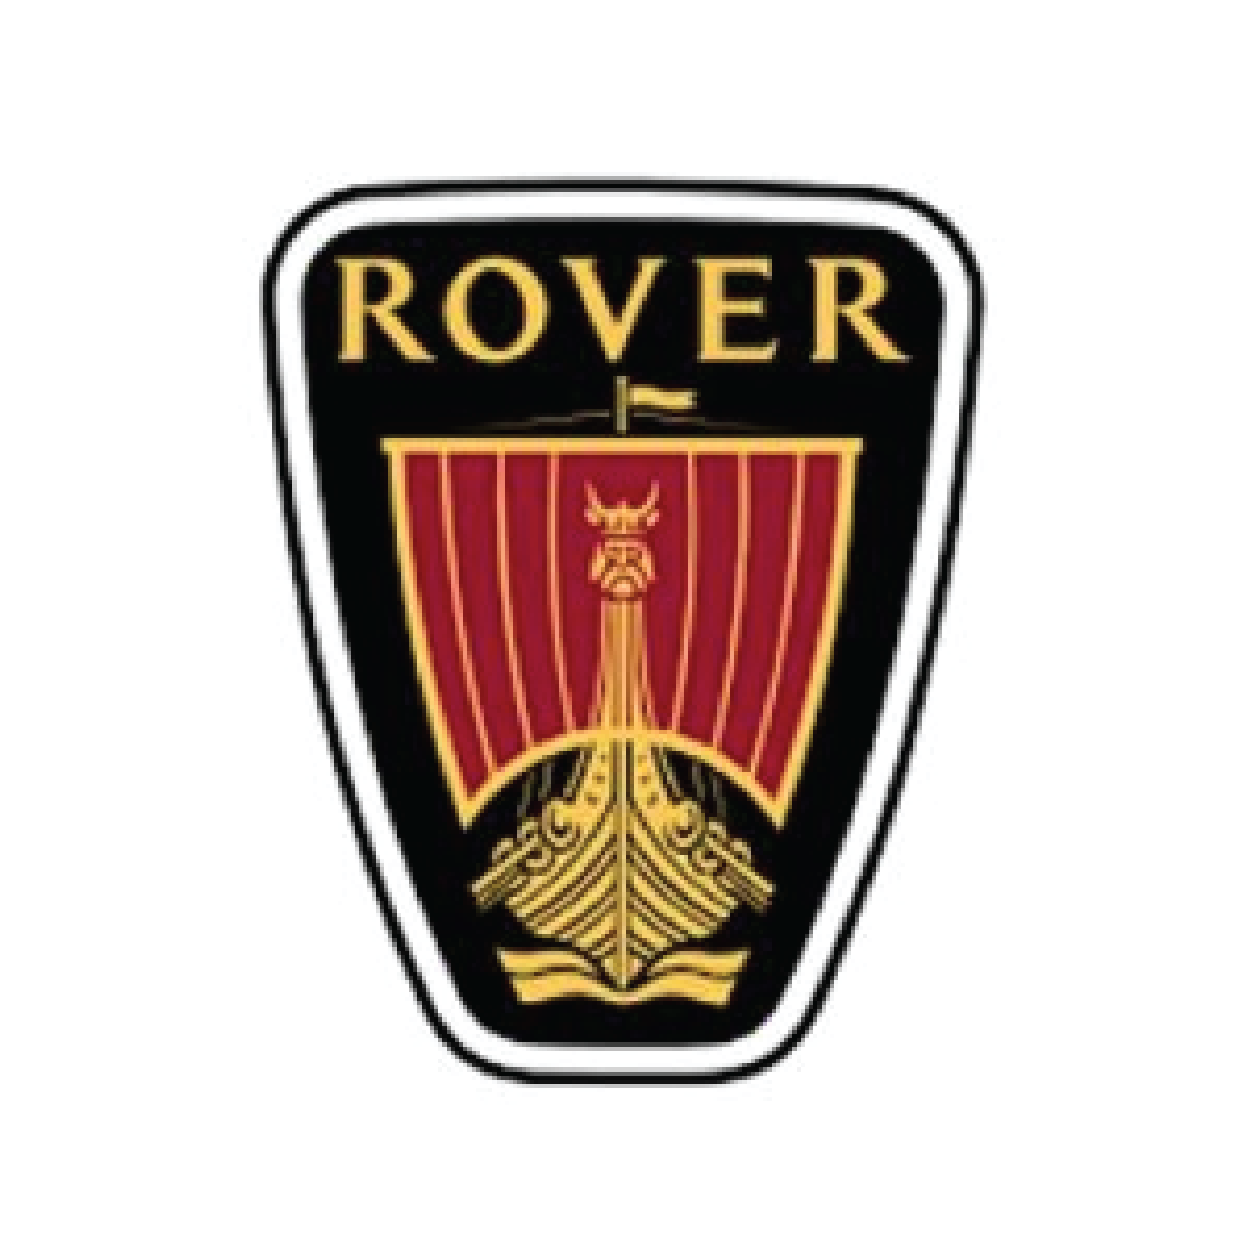 rover-wadex-serwiskluczy24-pl